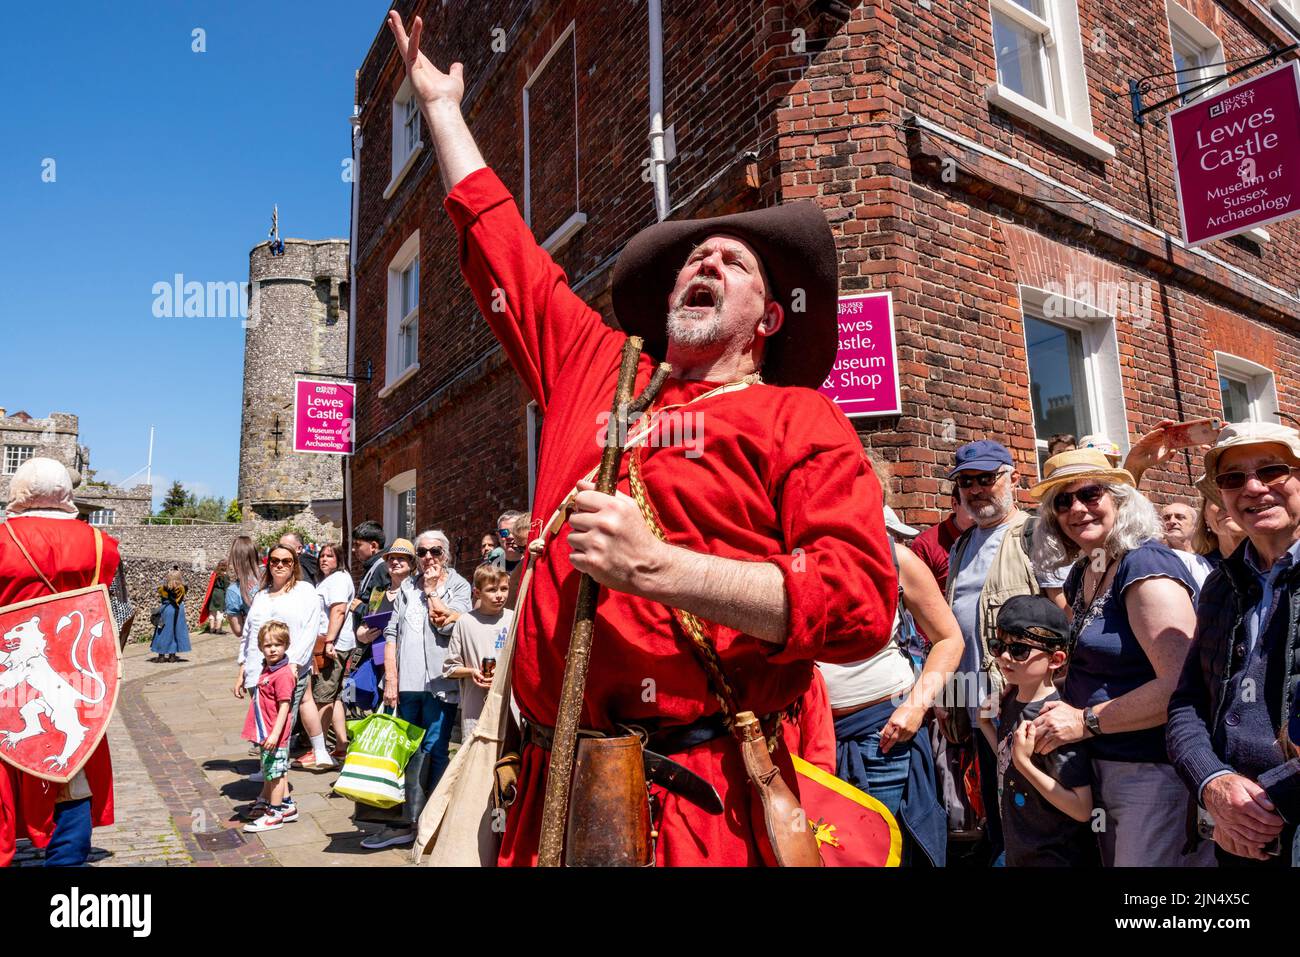 Un homme local vêtu de costume médiéval raconte les événements de la bataille de Lewes, 13th ans, à Lewes, dans l'est du Sussex, au Royaume-Uni. Banque D'Images